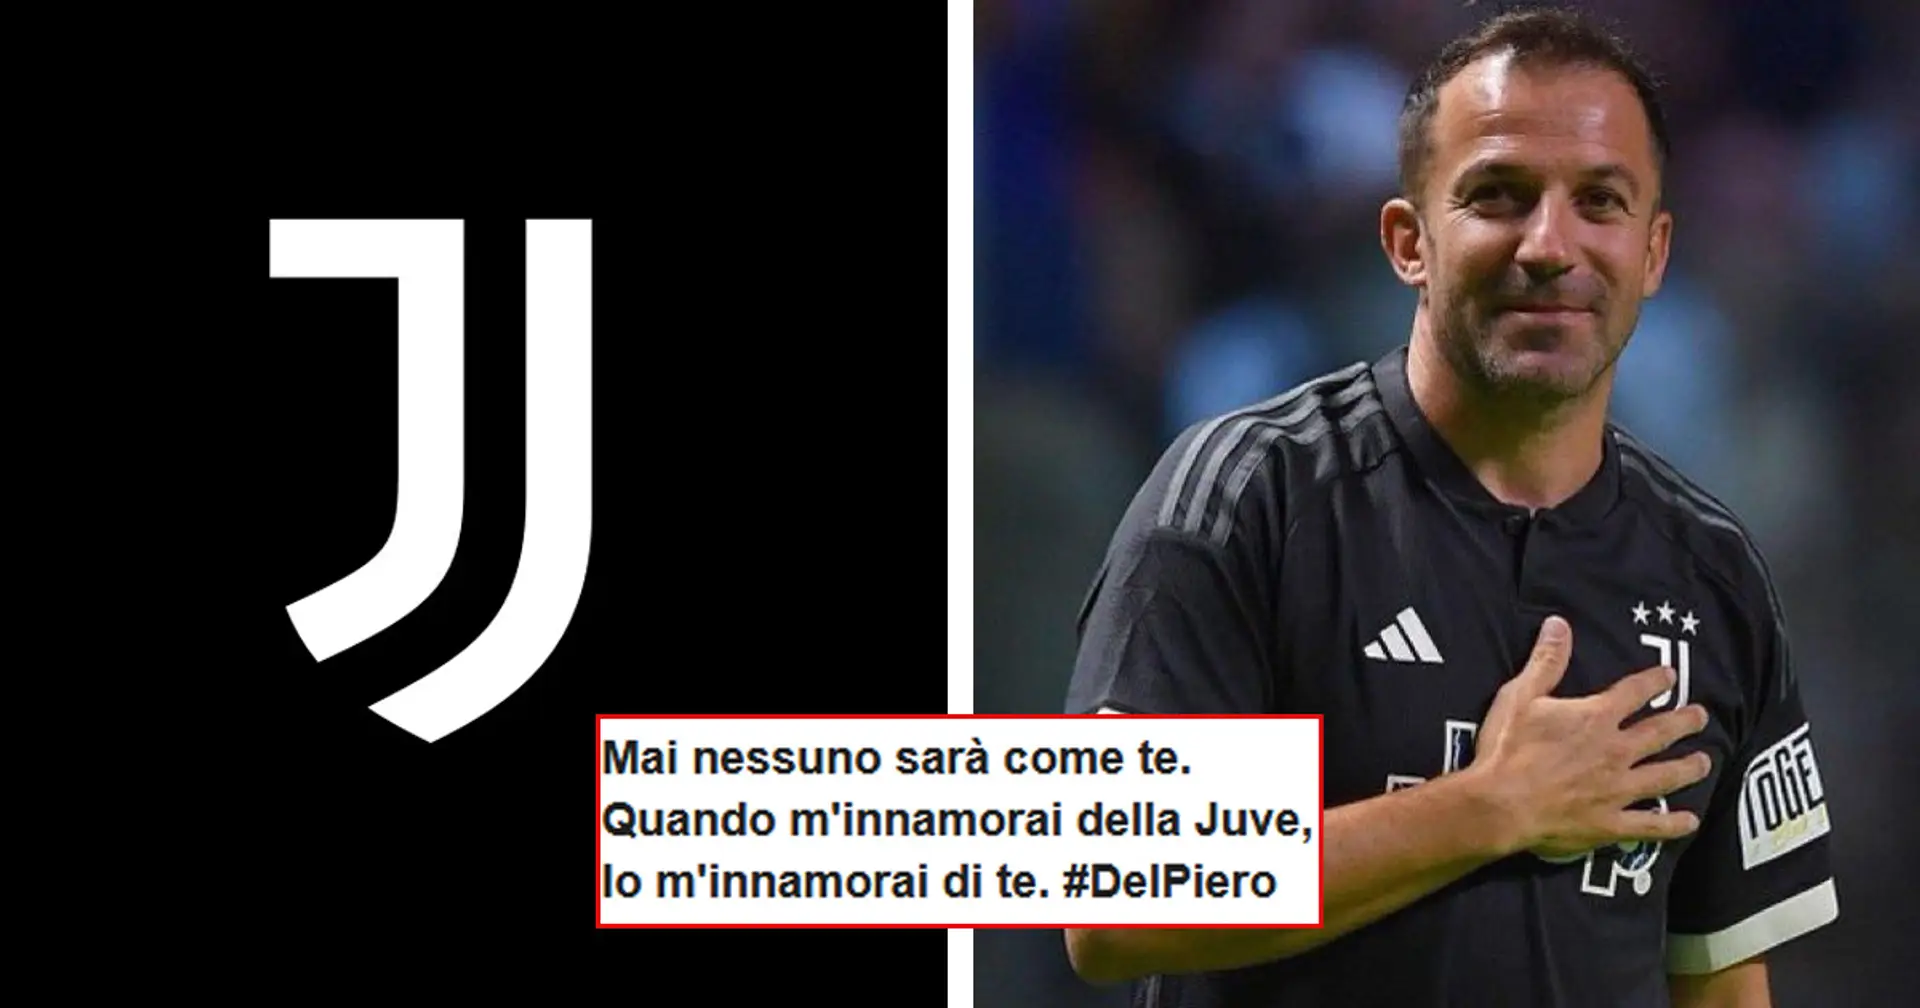 "Eterno, unico, TU sei la Juve": i tifosi rendono omaggio ad Alex Del Piero per il suo 49° compleanno